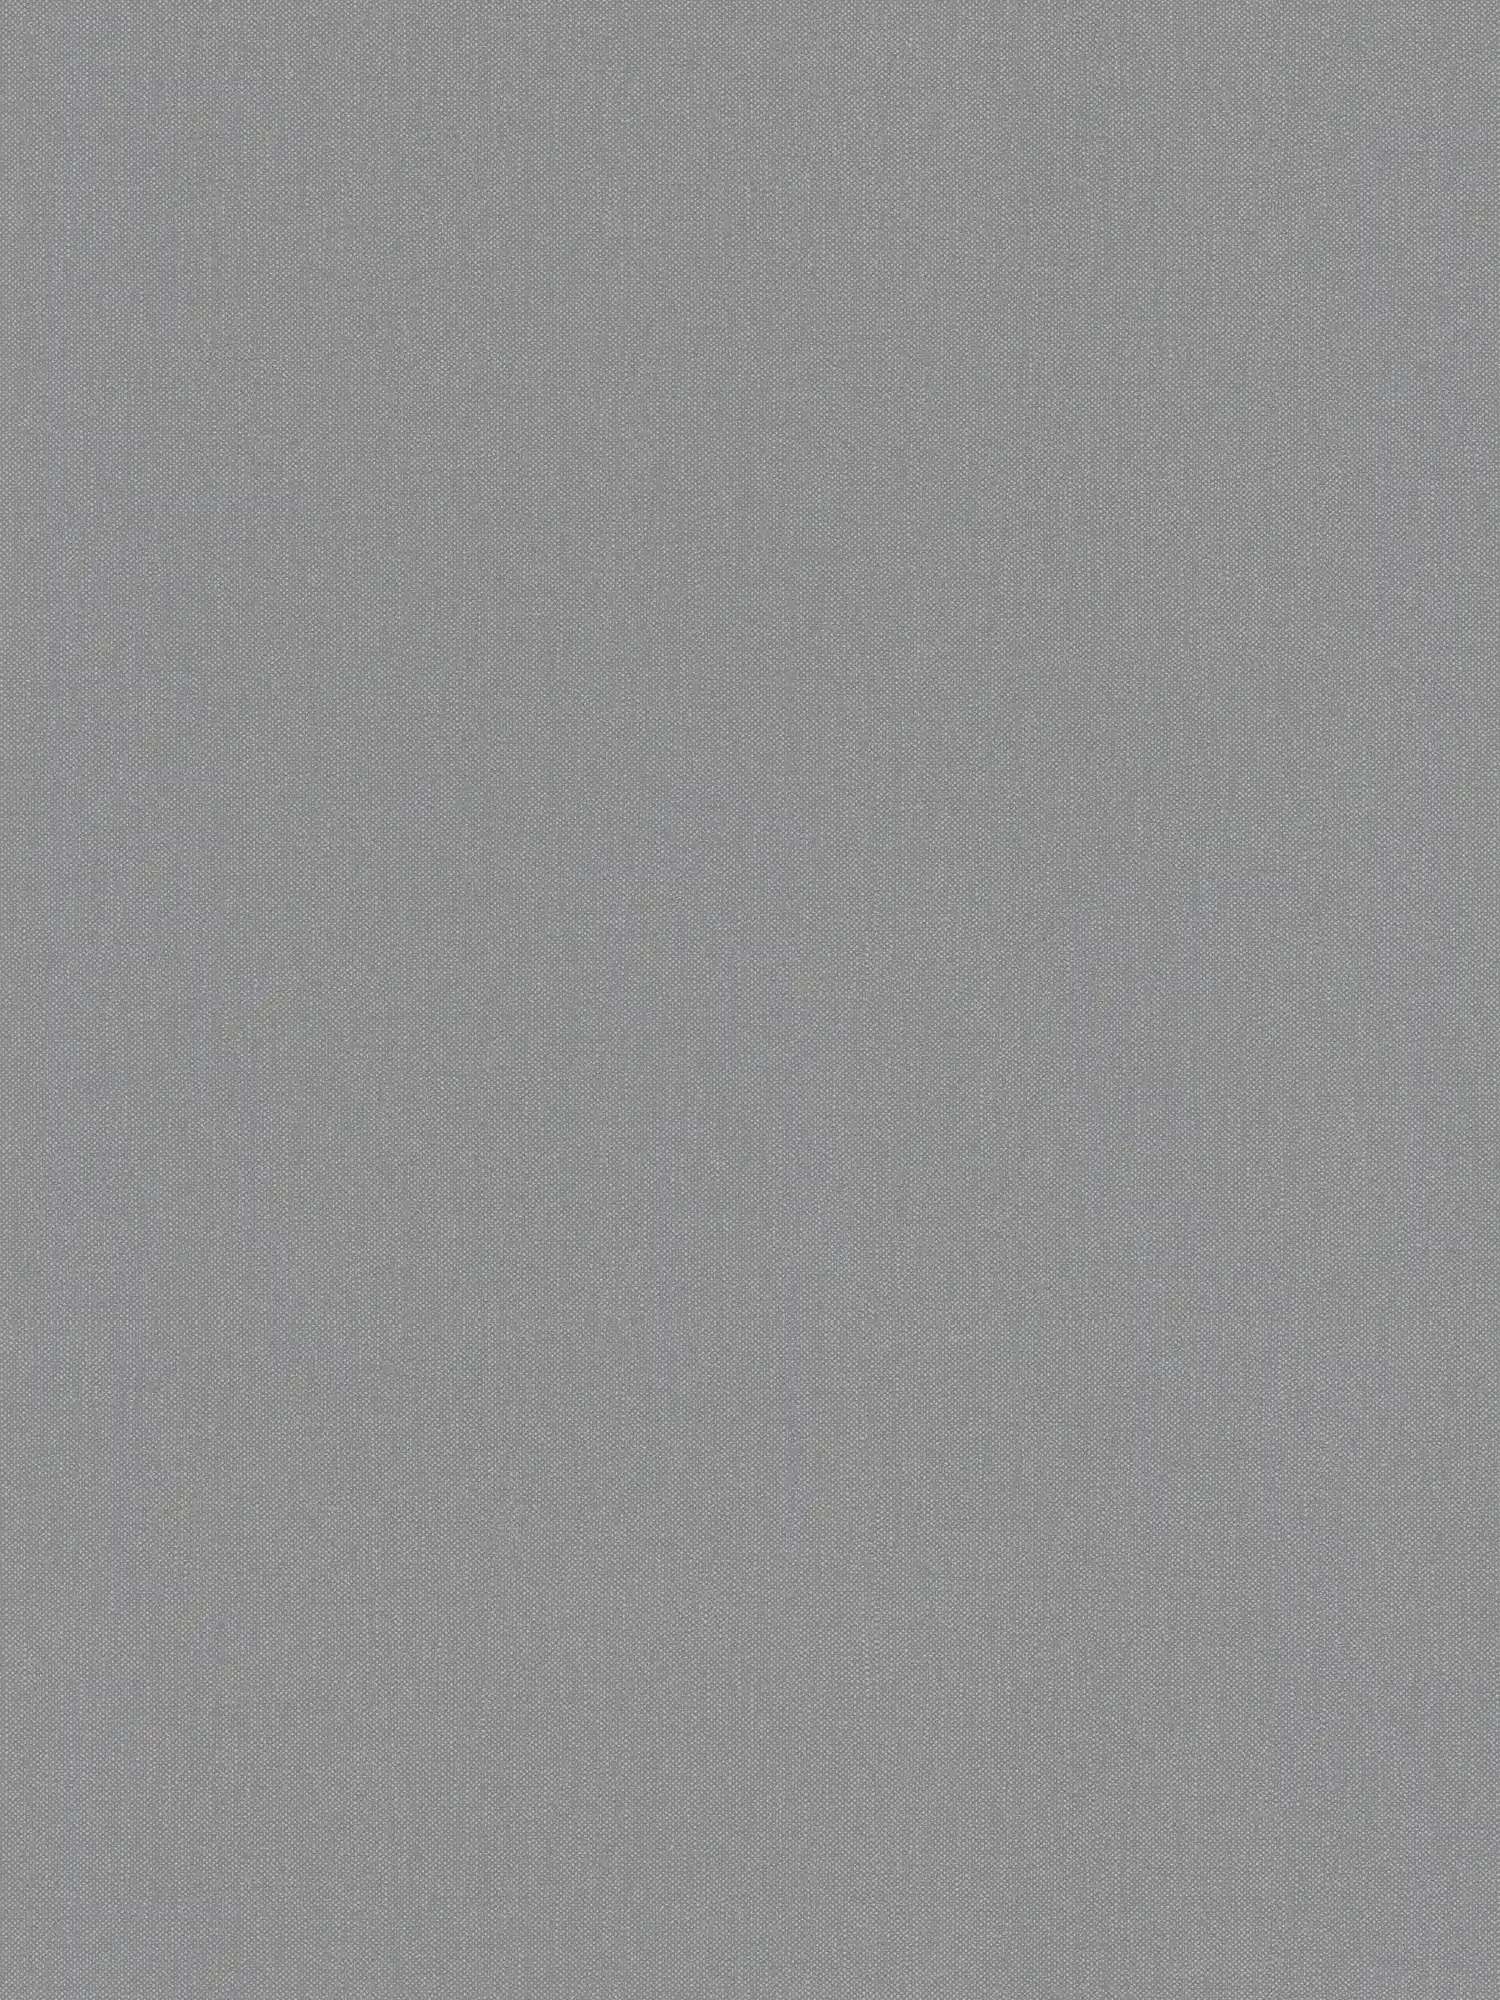 Papier peint aspect lin avec motif structuré gris élégant
